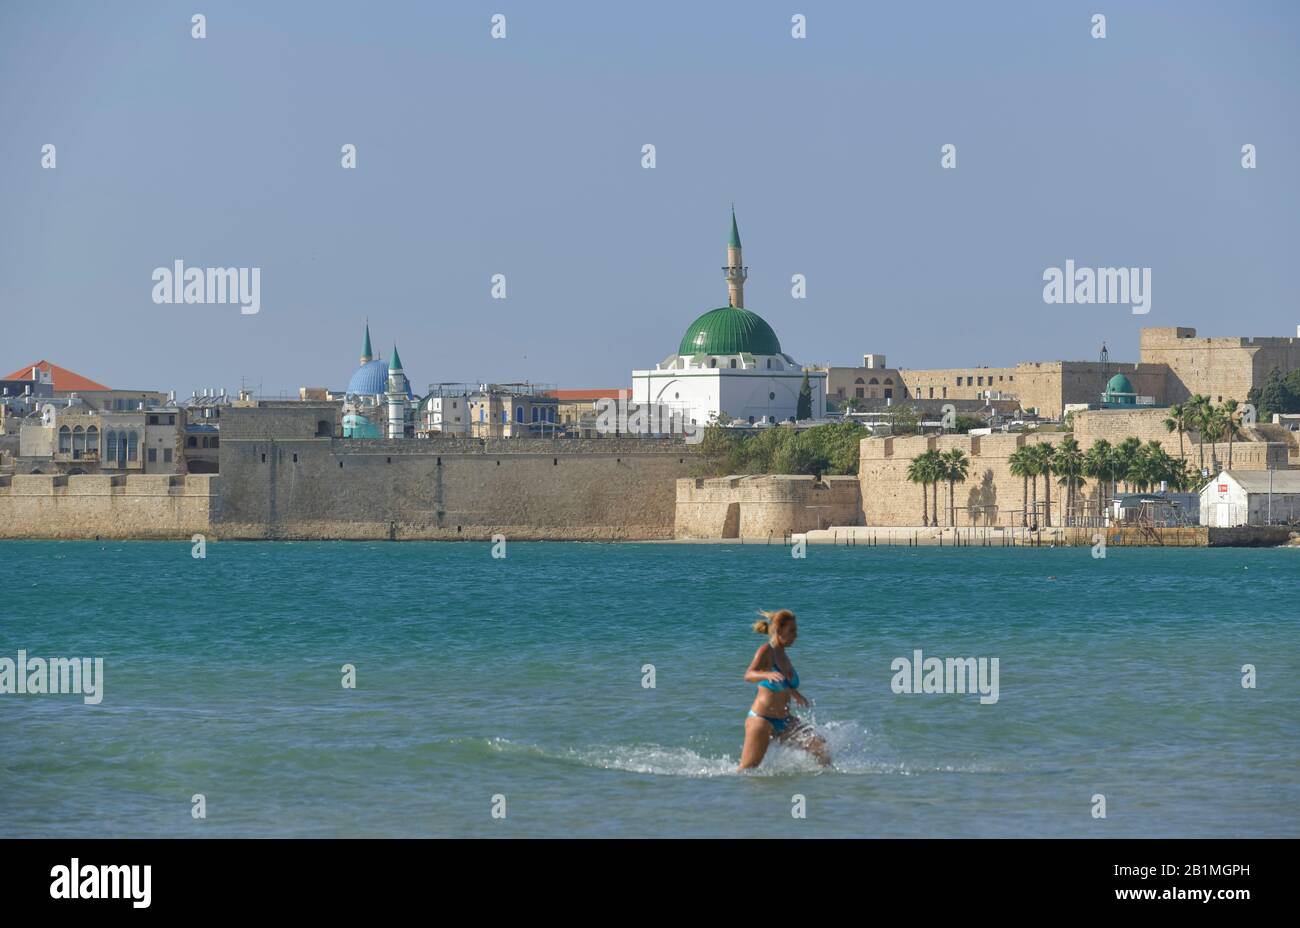 Stadtansicht, Panorama, Mittelmeer, Akko, Israel Stock Photo